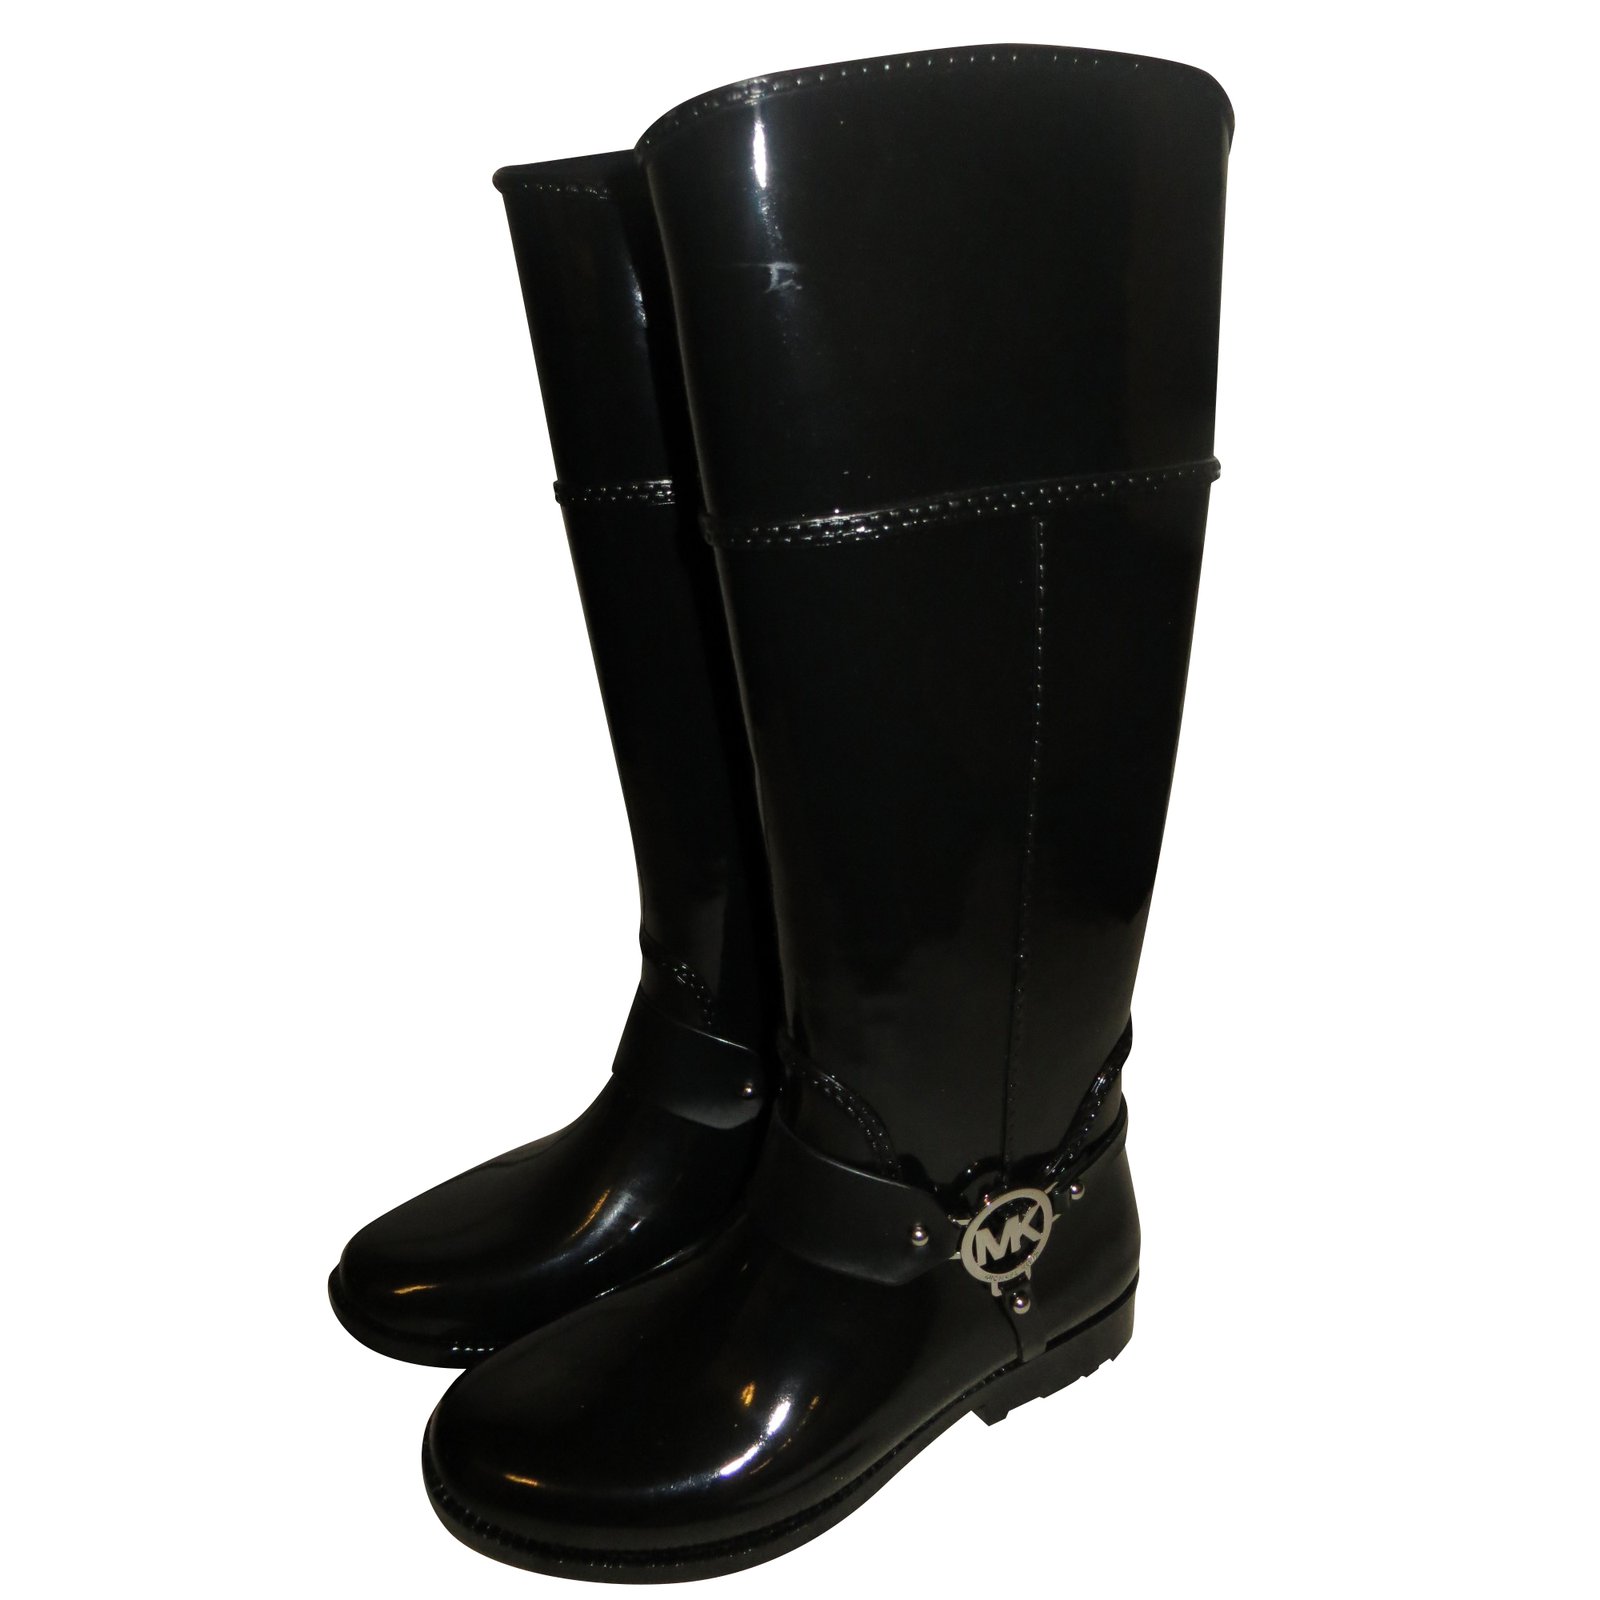 mk rain boots canada